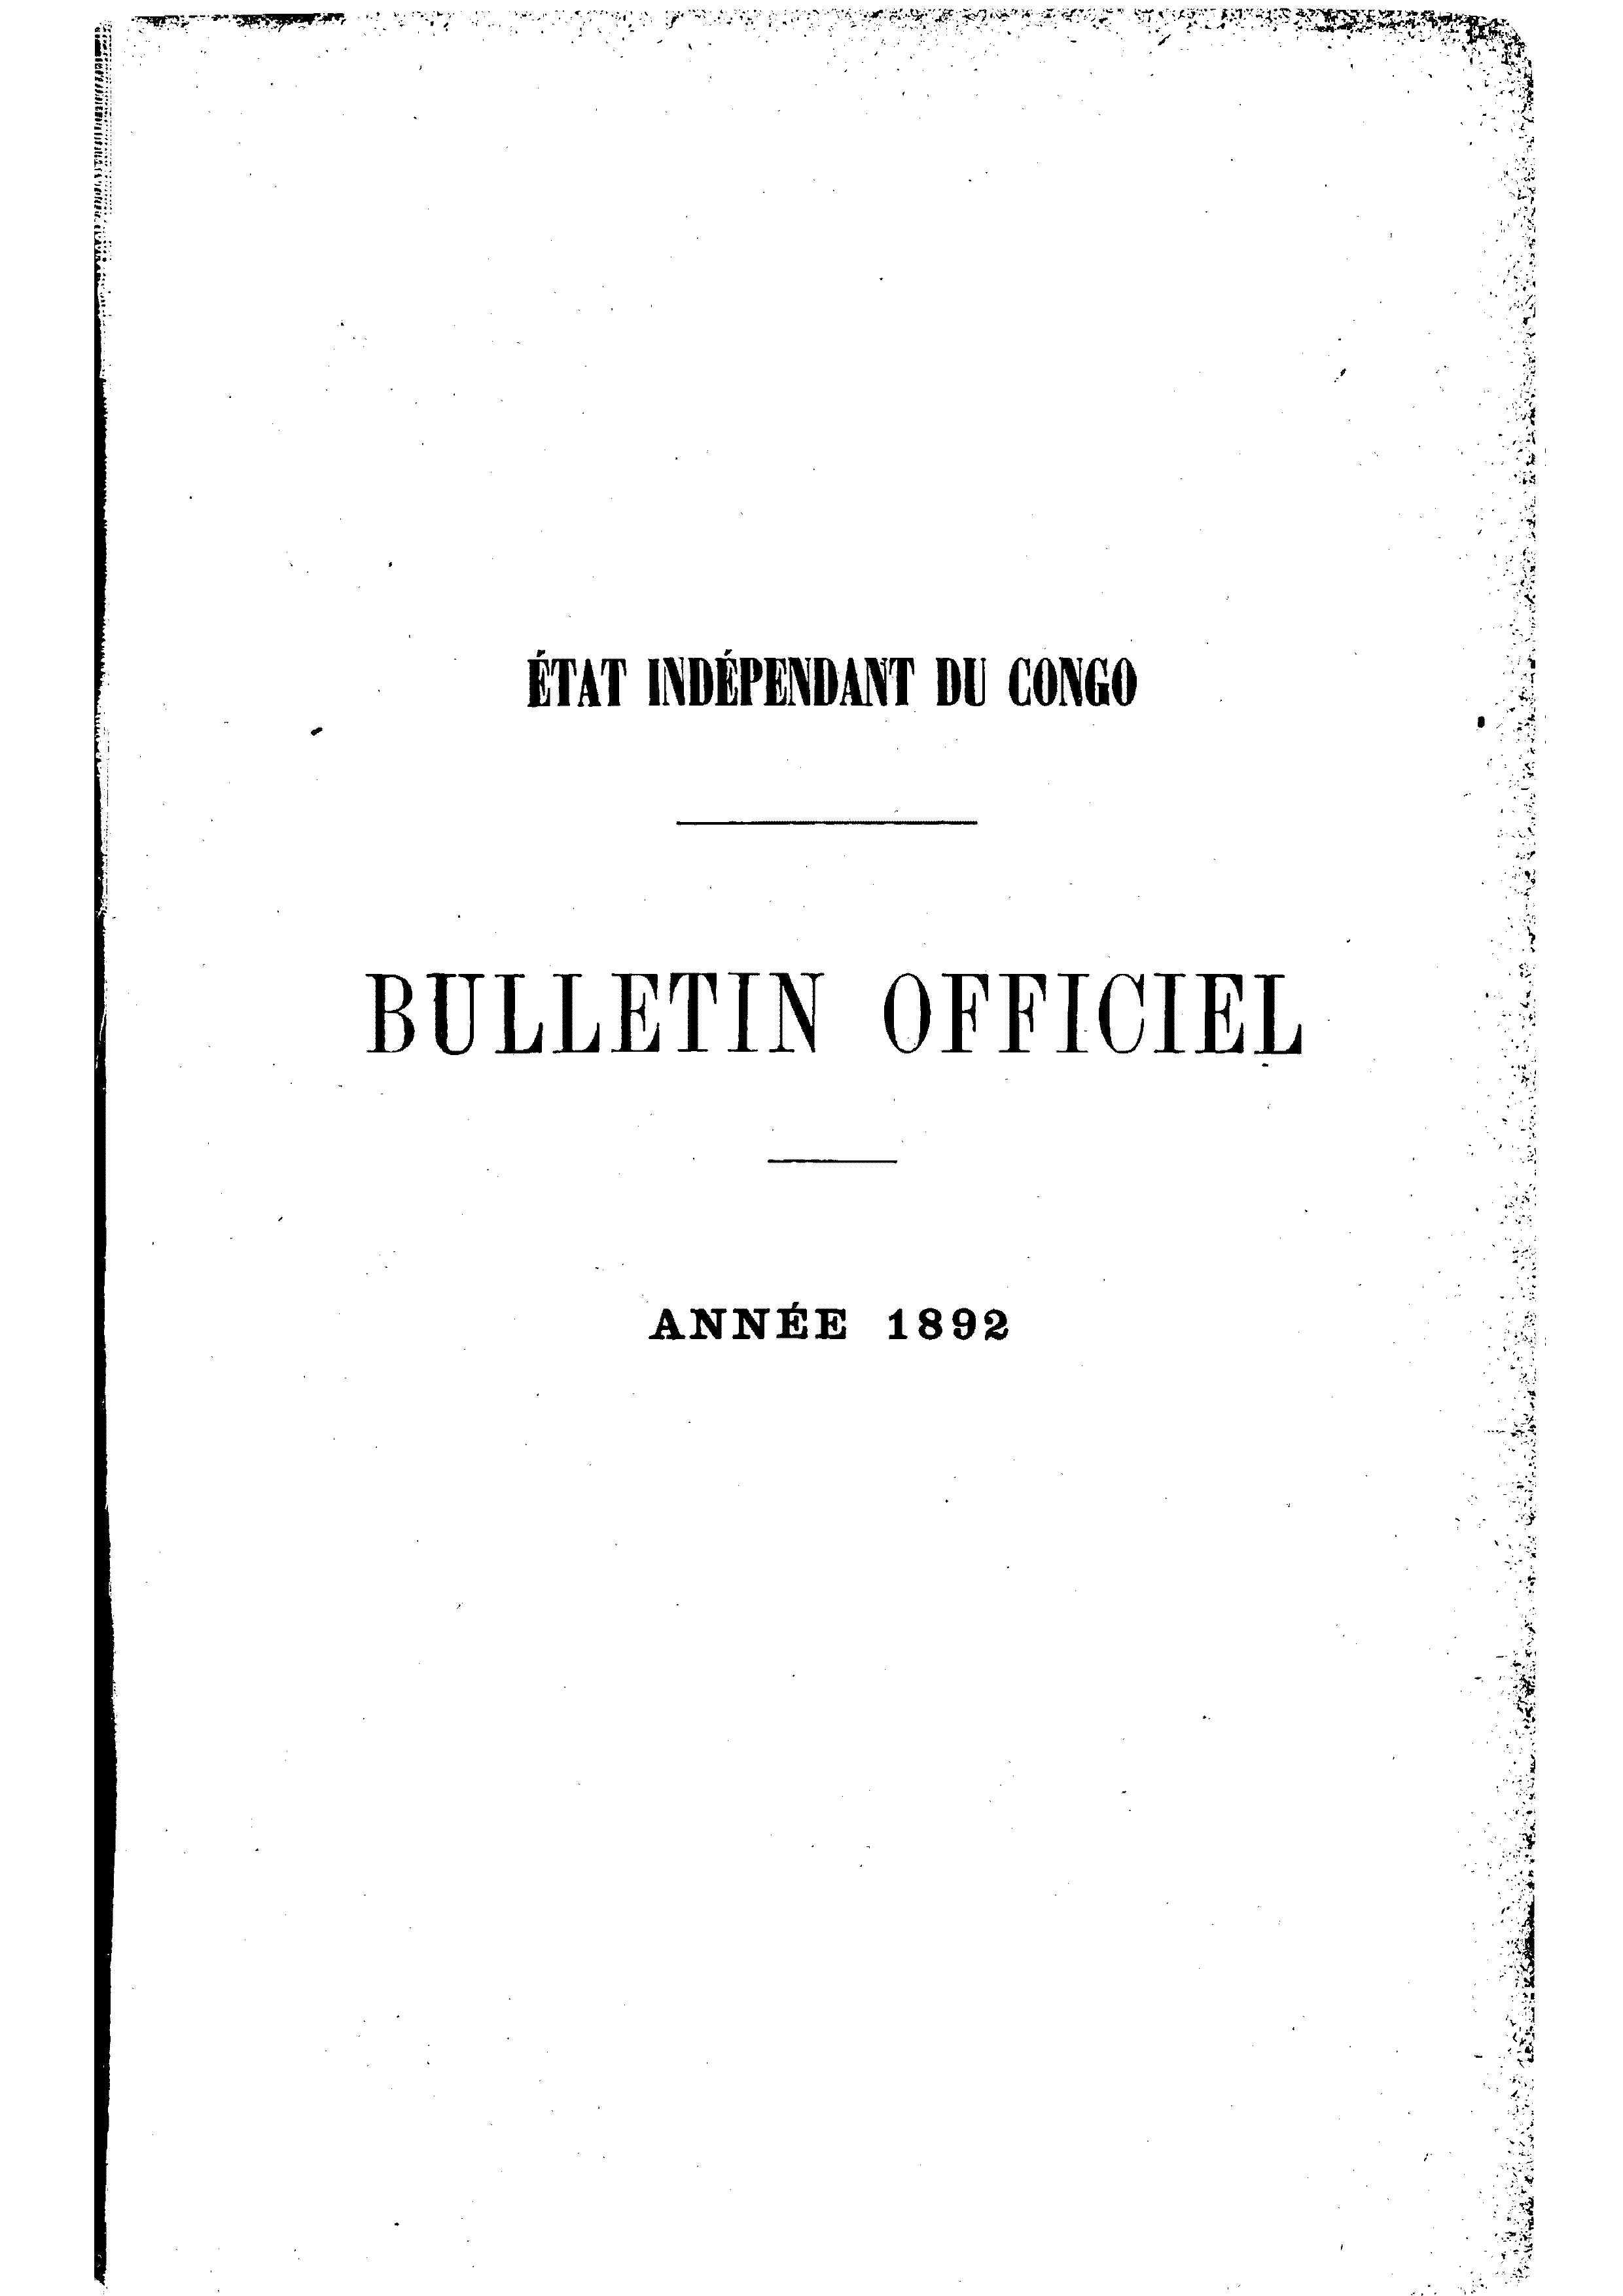 Book cover 202106132407: Etat Indépendant du Congo - roi Léopold II | Etat Indépendant du Congo - Bulletin Officiel – Année 1892